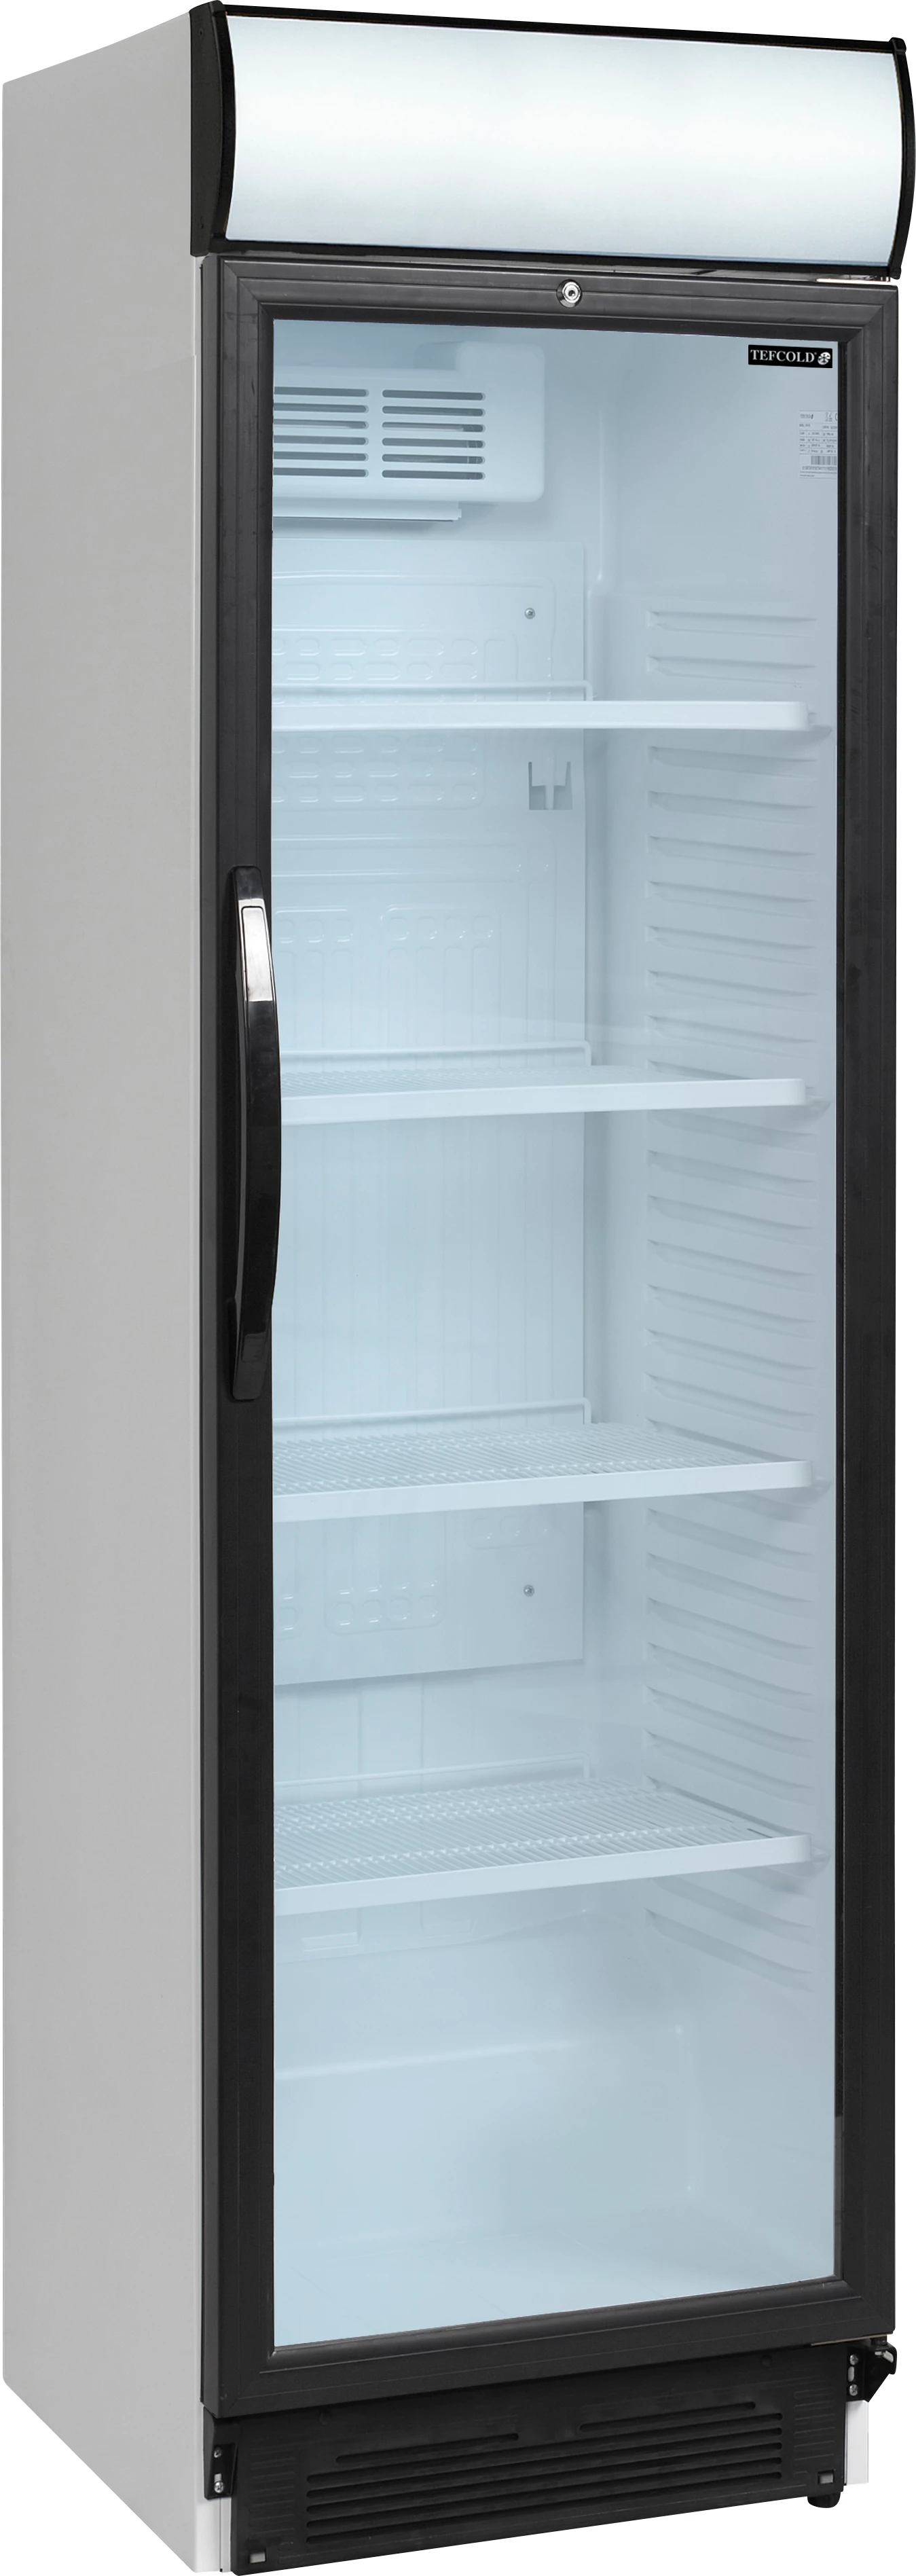 Tefcold CEV425CP displaykøleskab